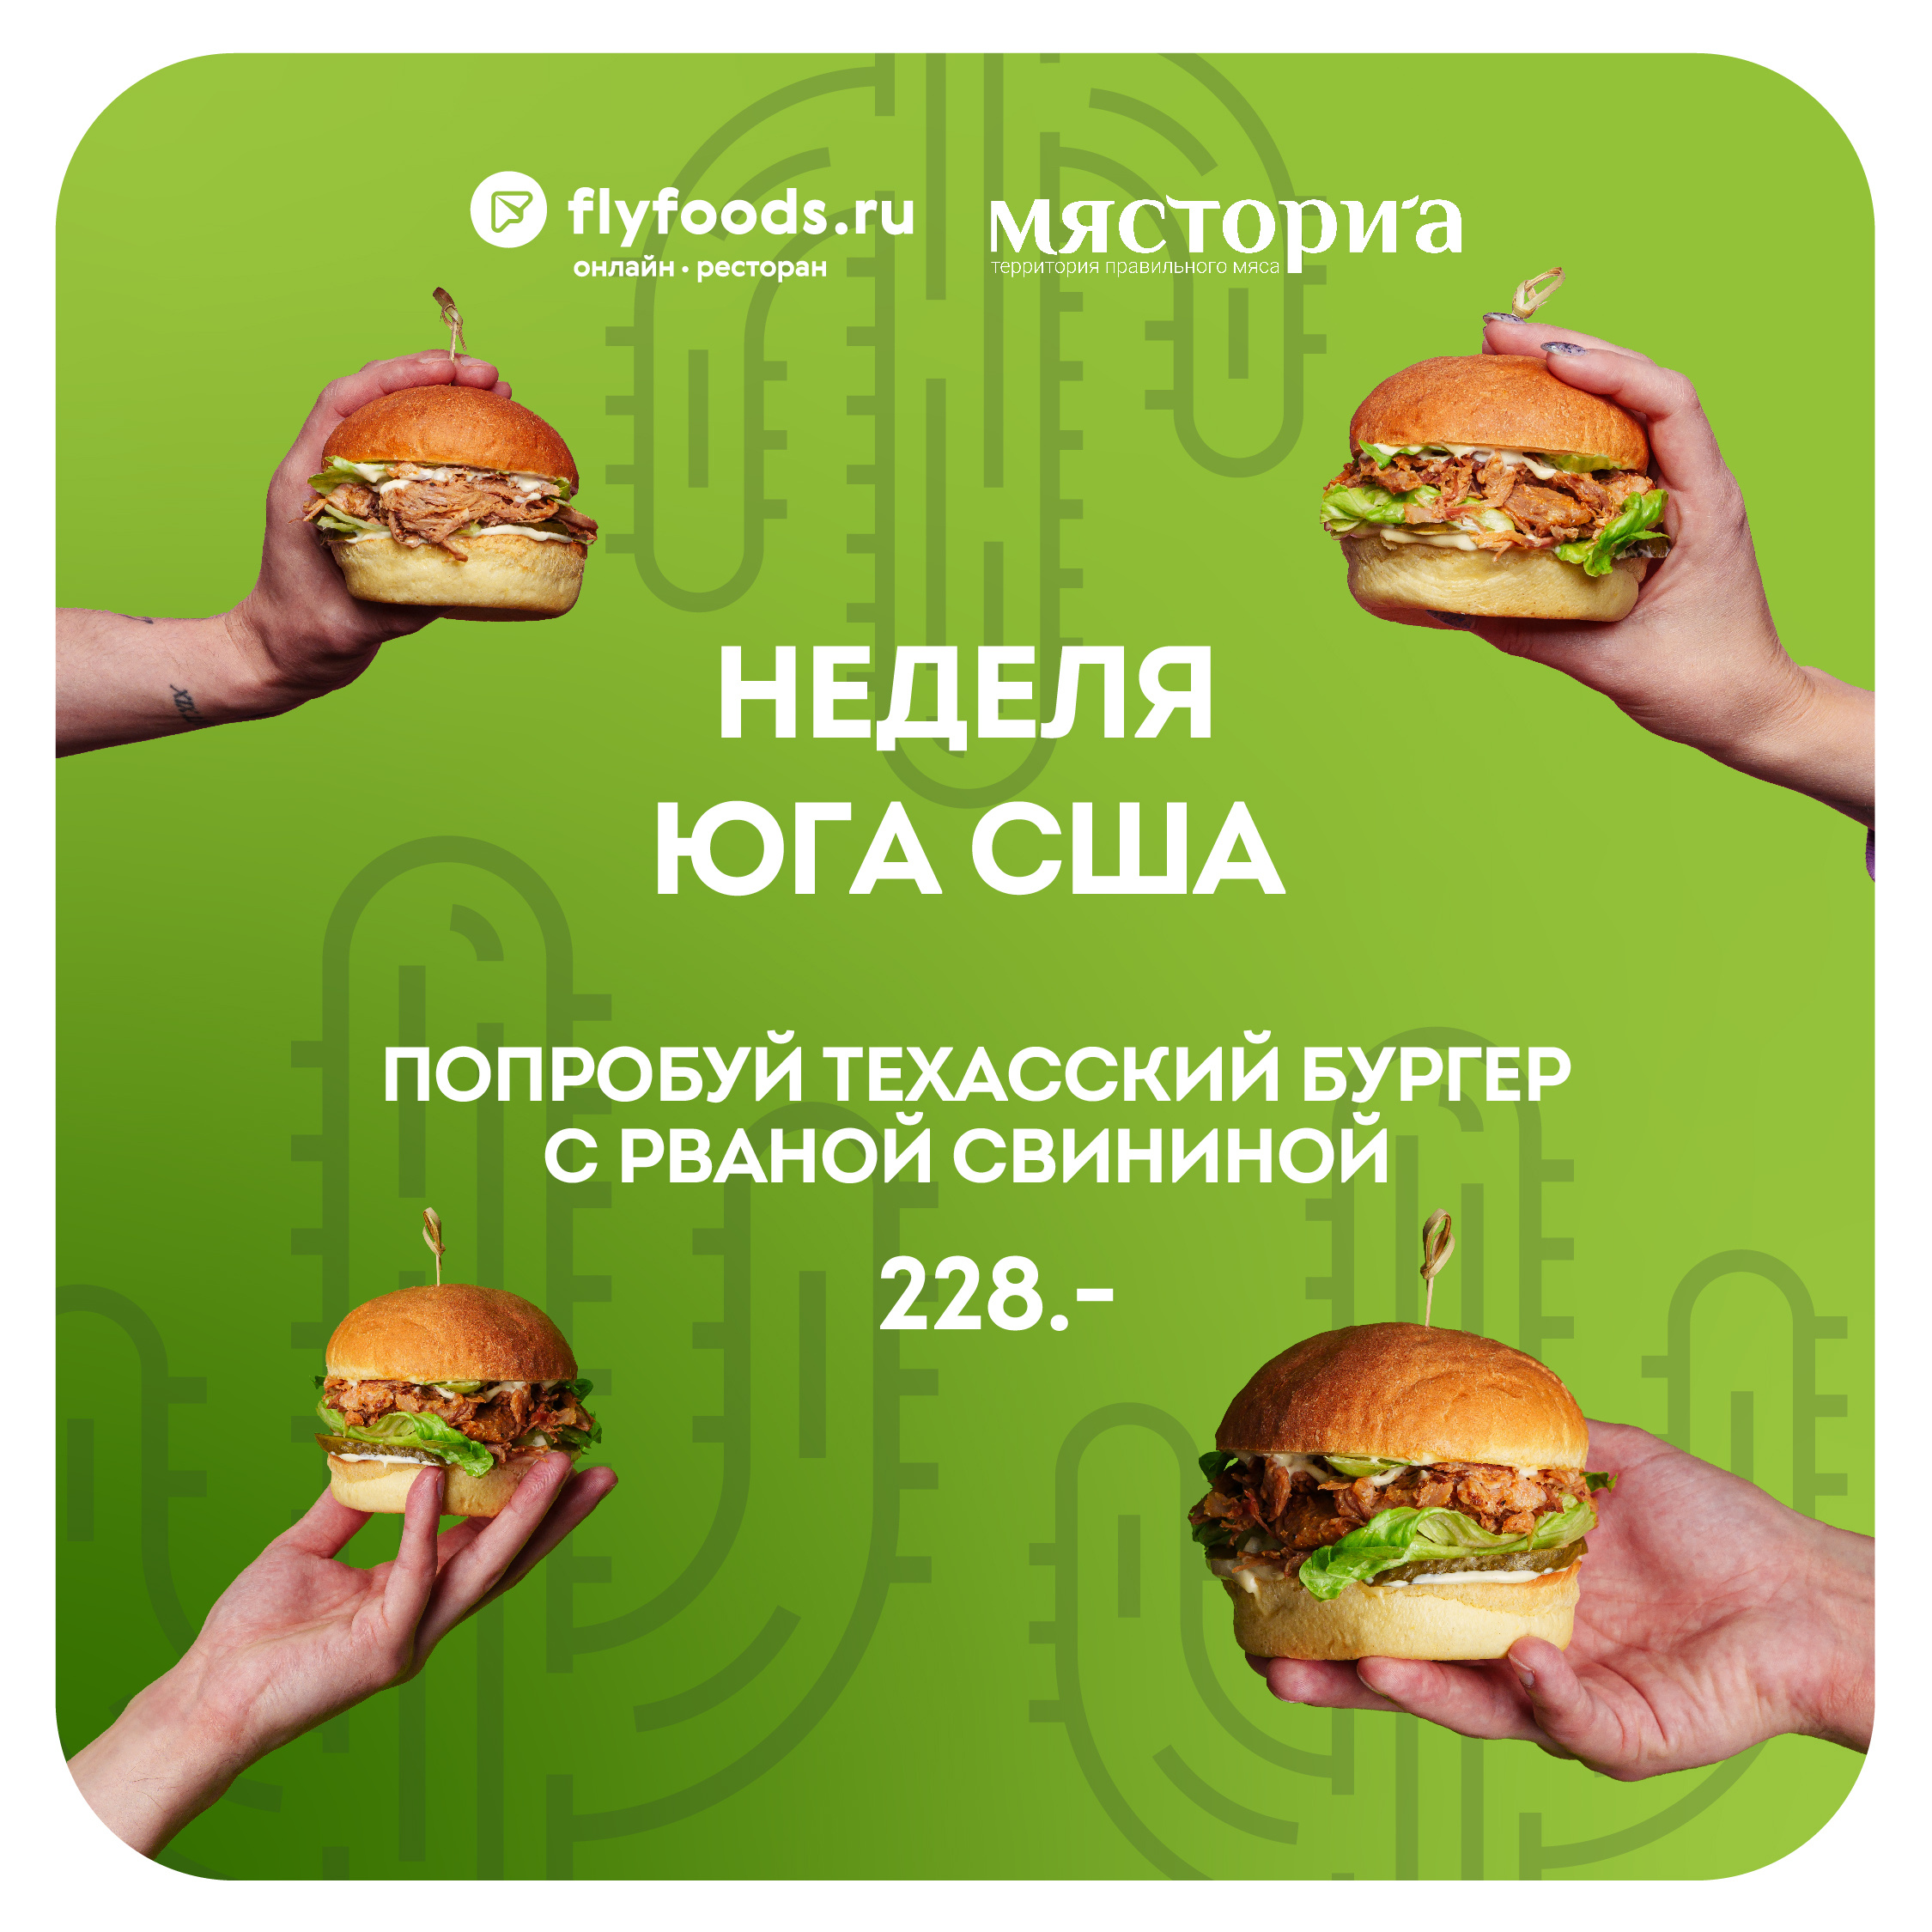 Бургер от шефа всего за <nobr class="_">228 рублей</nobr> — только во Flyfoods